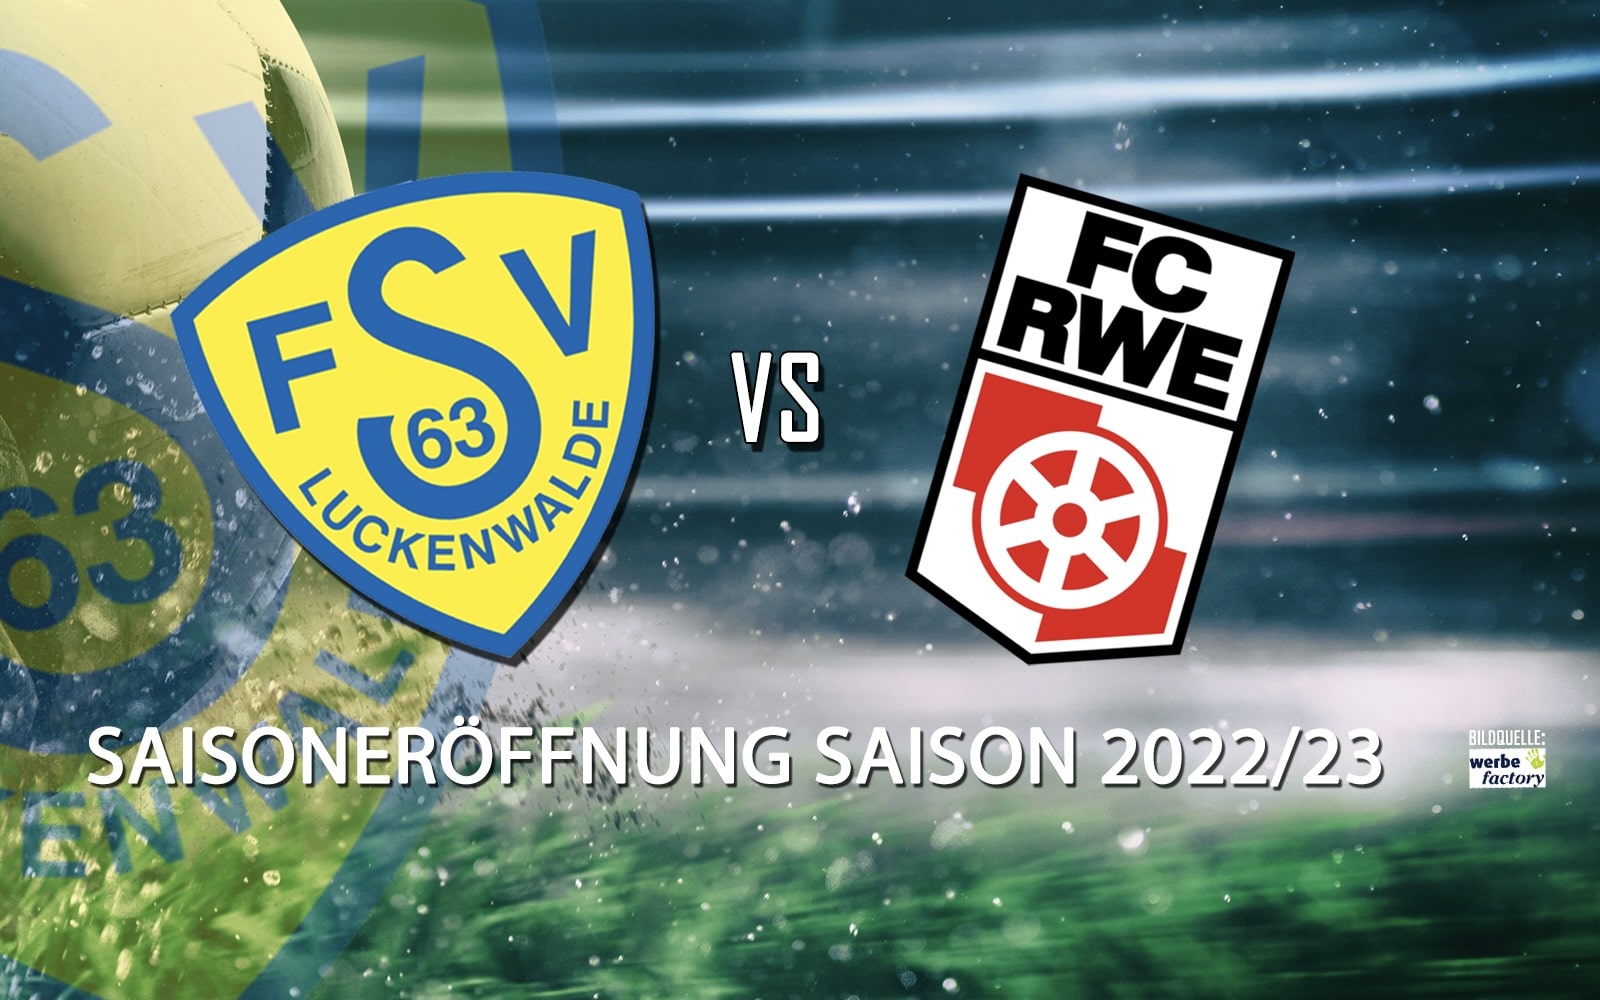 Spielplan der Regionalliga Nordost 2022/23 steht 1